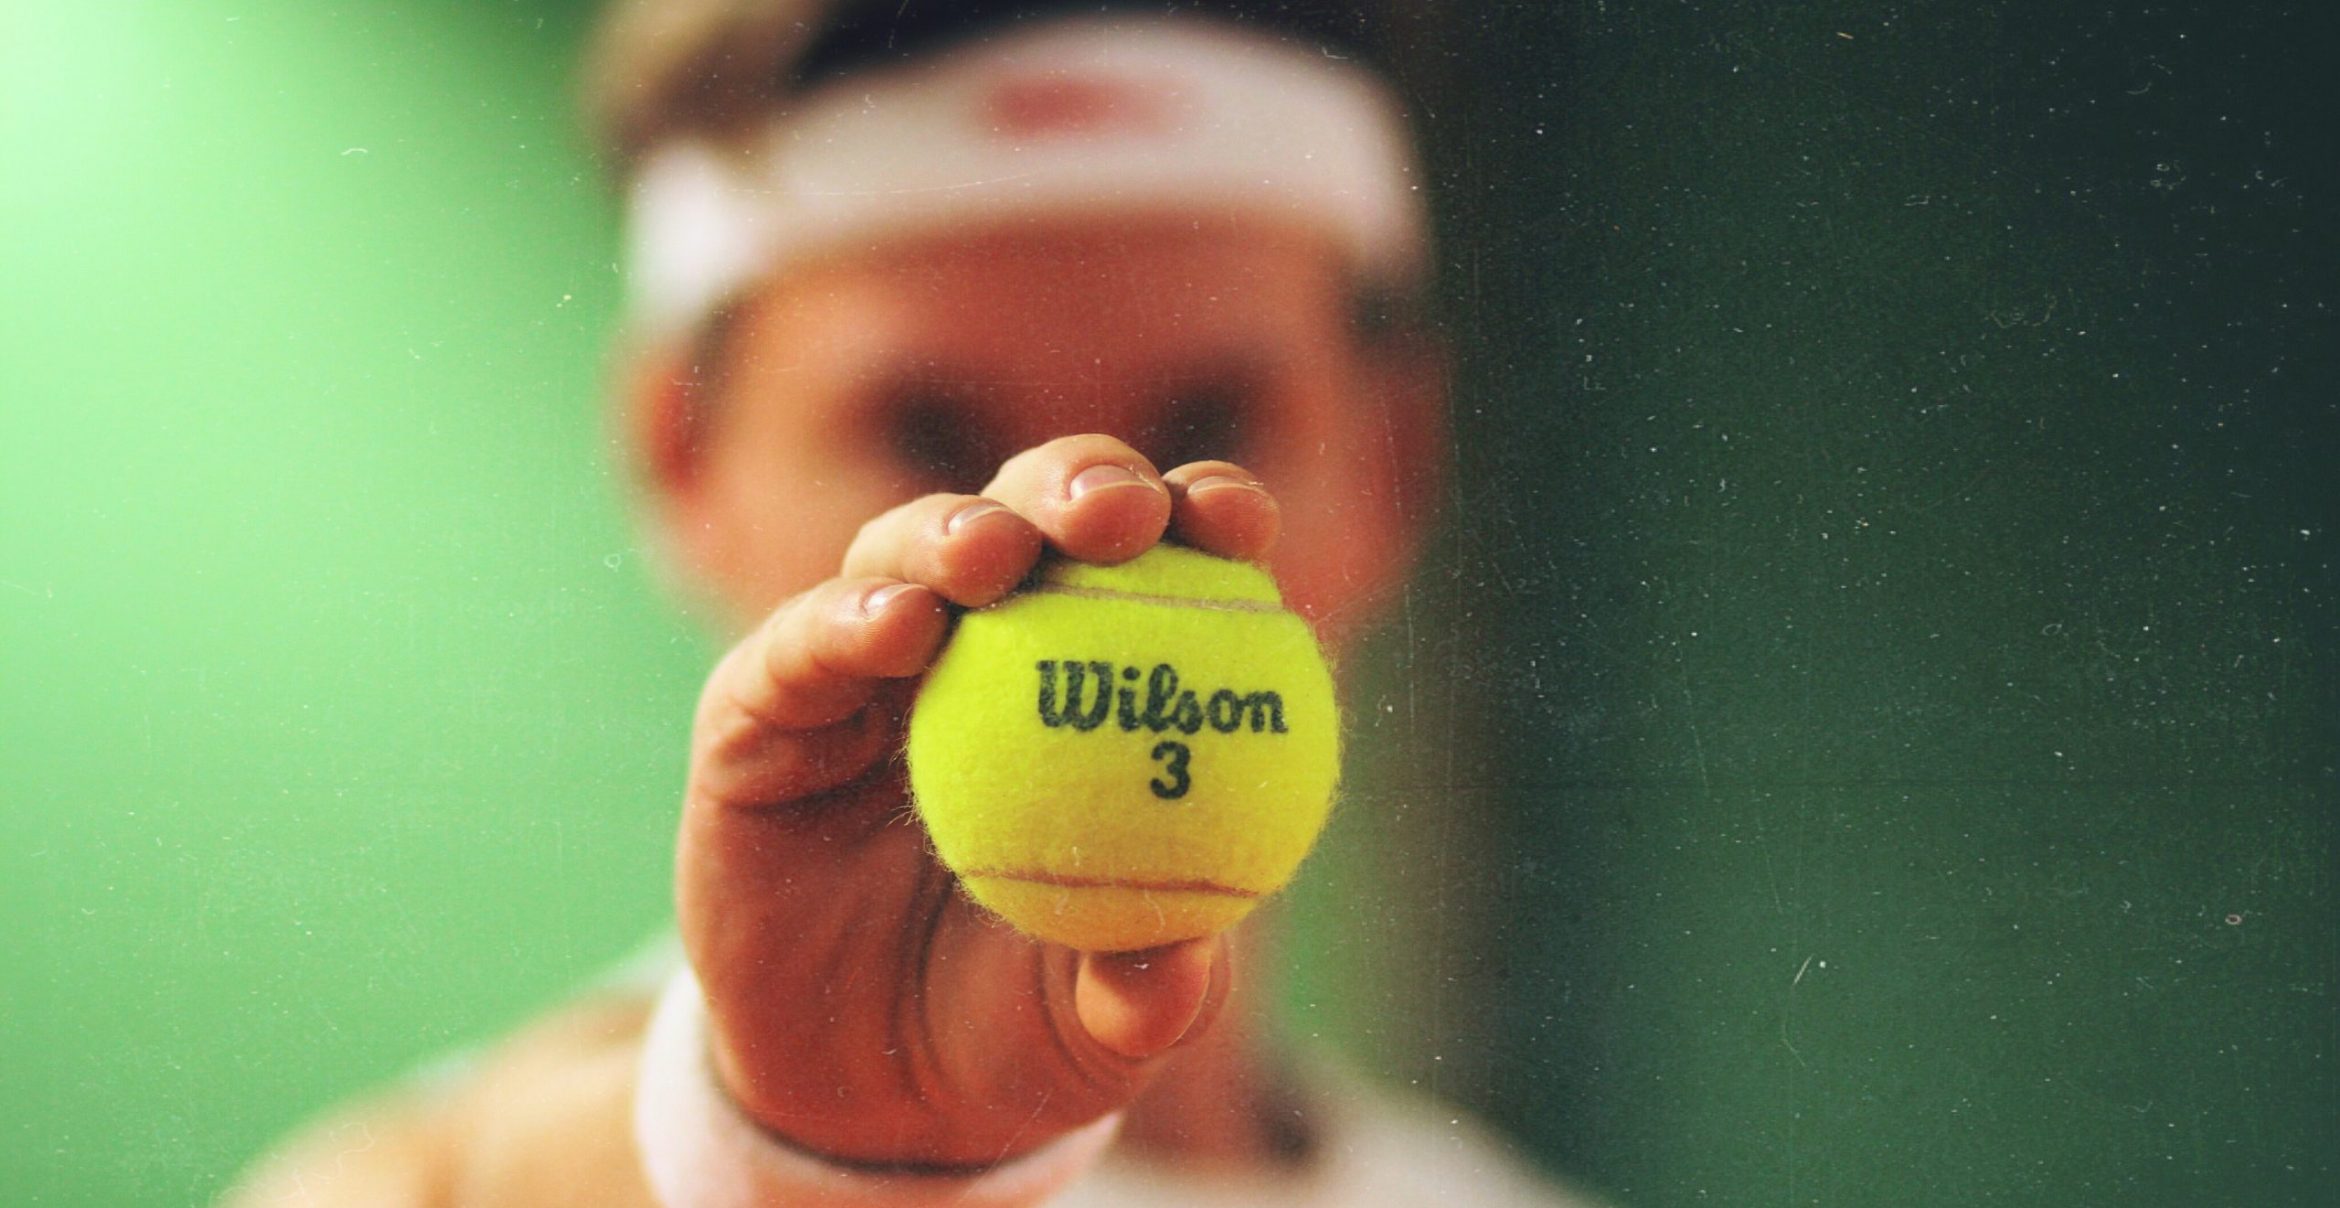 Bestleistung unter Druck: Die erstaunliche Tennisball-Technik